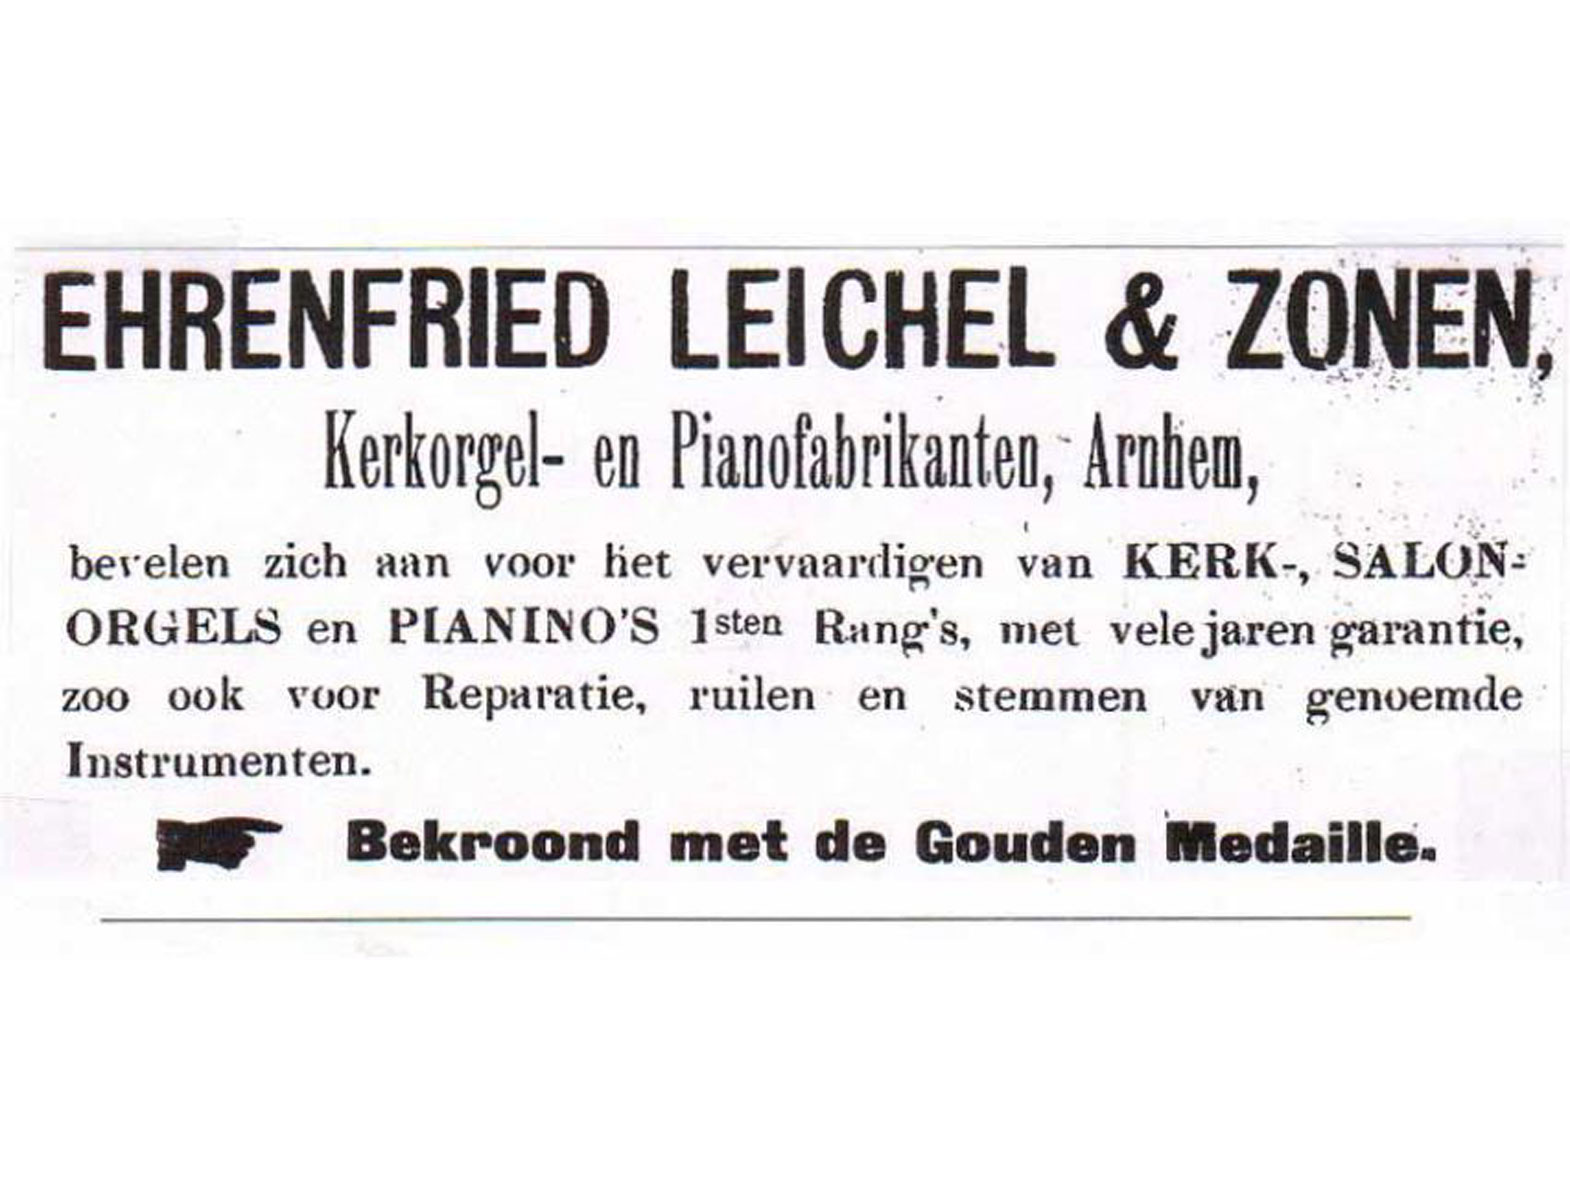 Advertentie van Eherenfried Leichel